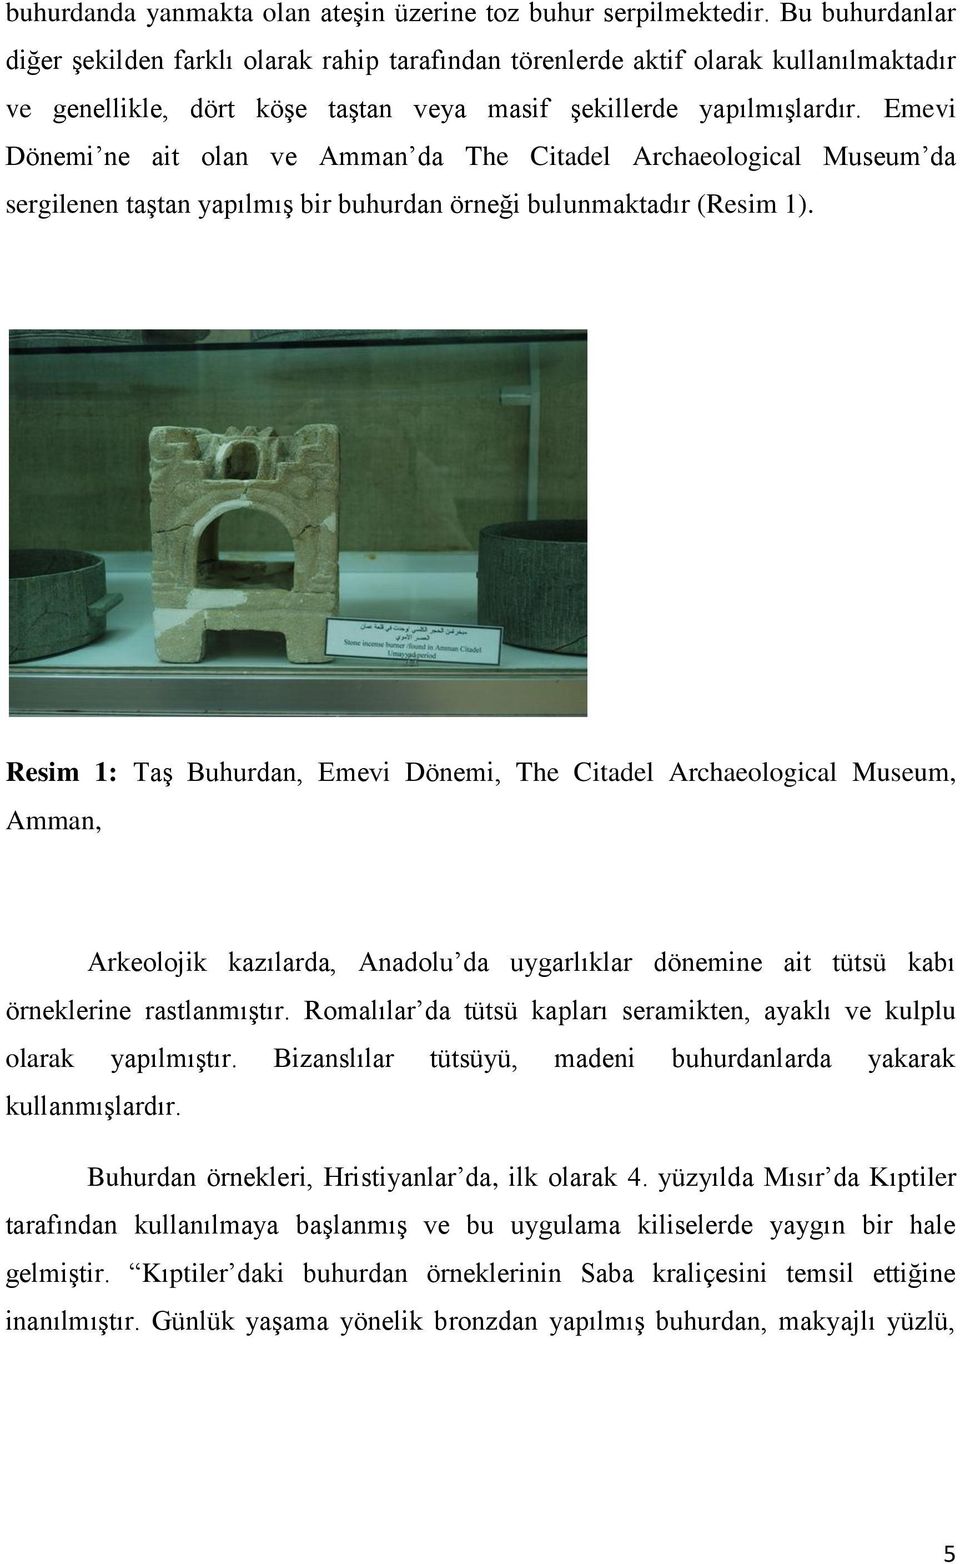 Emevi Dönemi ne ait olan ve Amman da The Citadel Archaeological Museum da sergilenen taştan yapılmış bir buhurdan örneği bulunmaktadır (Resim 1).